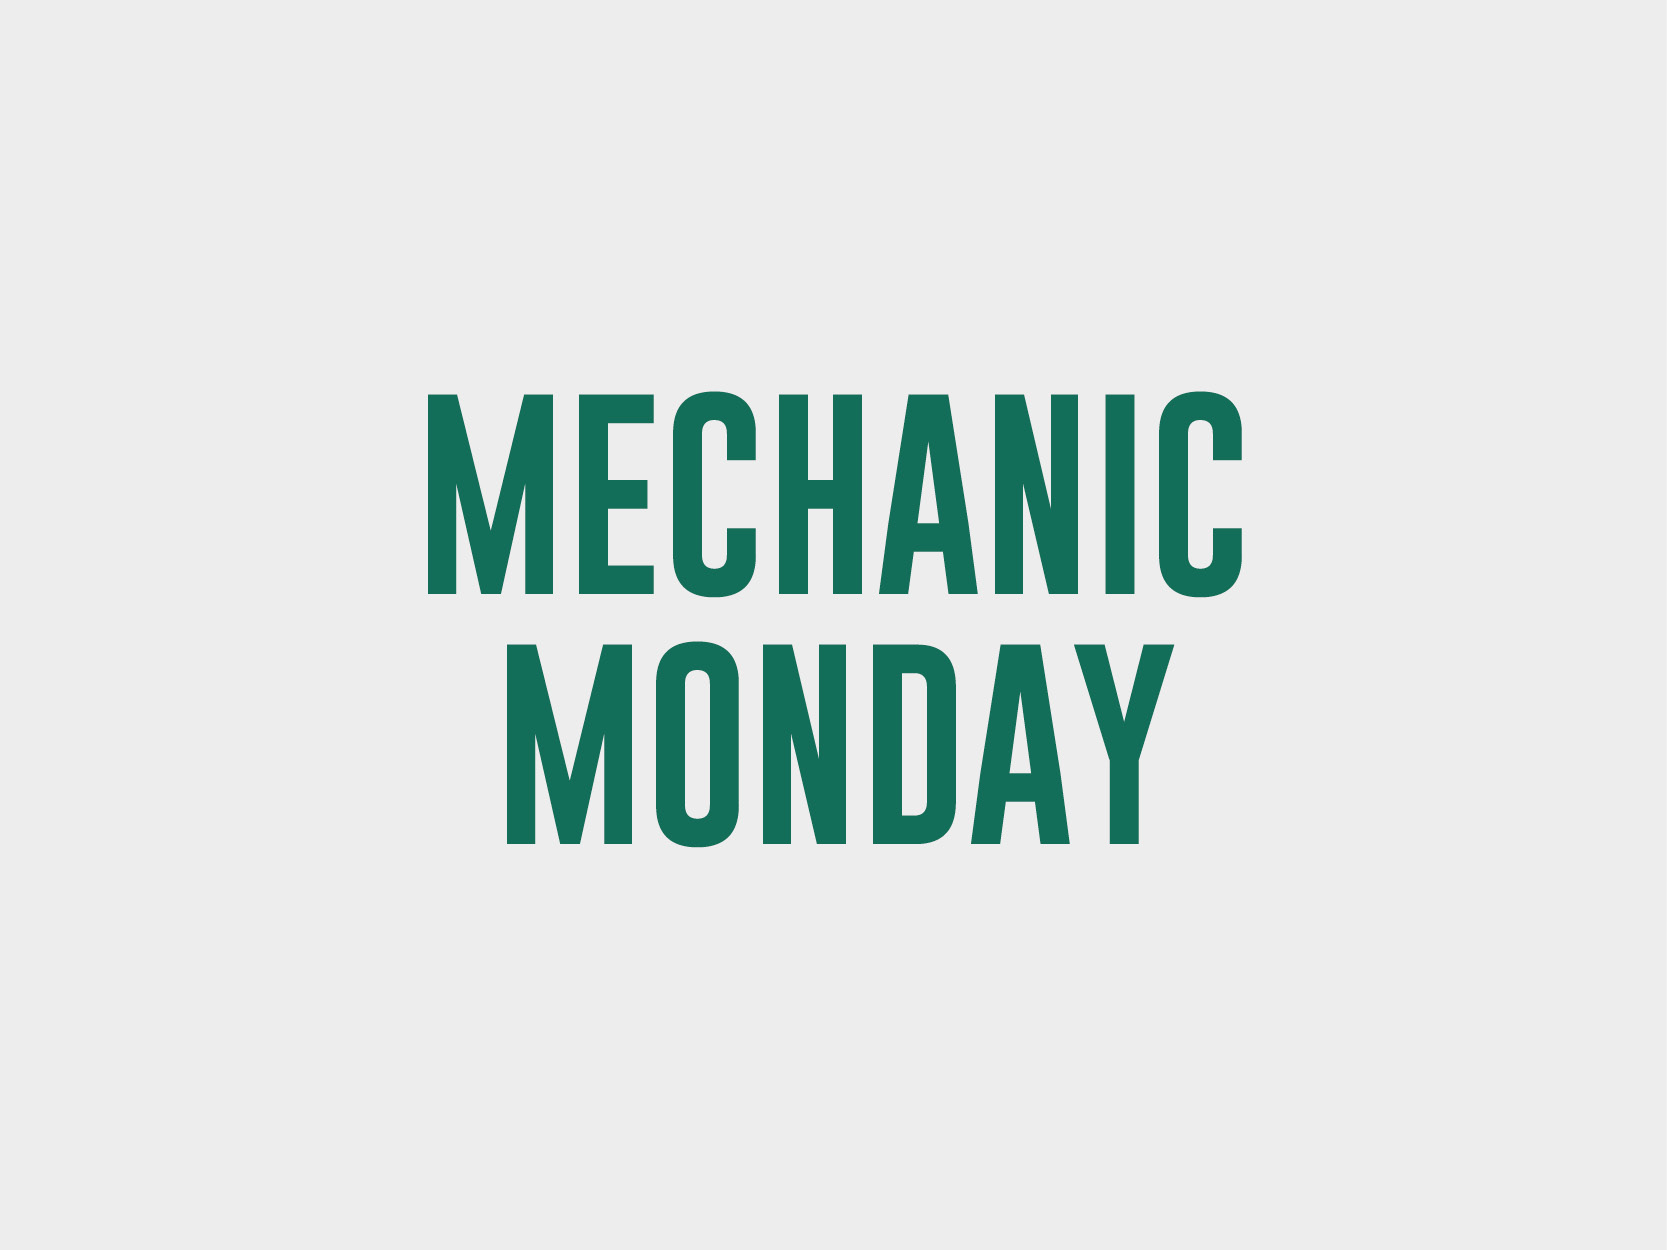 Mechanic Monday